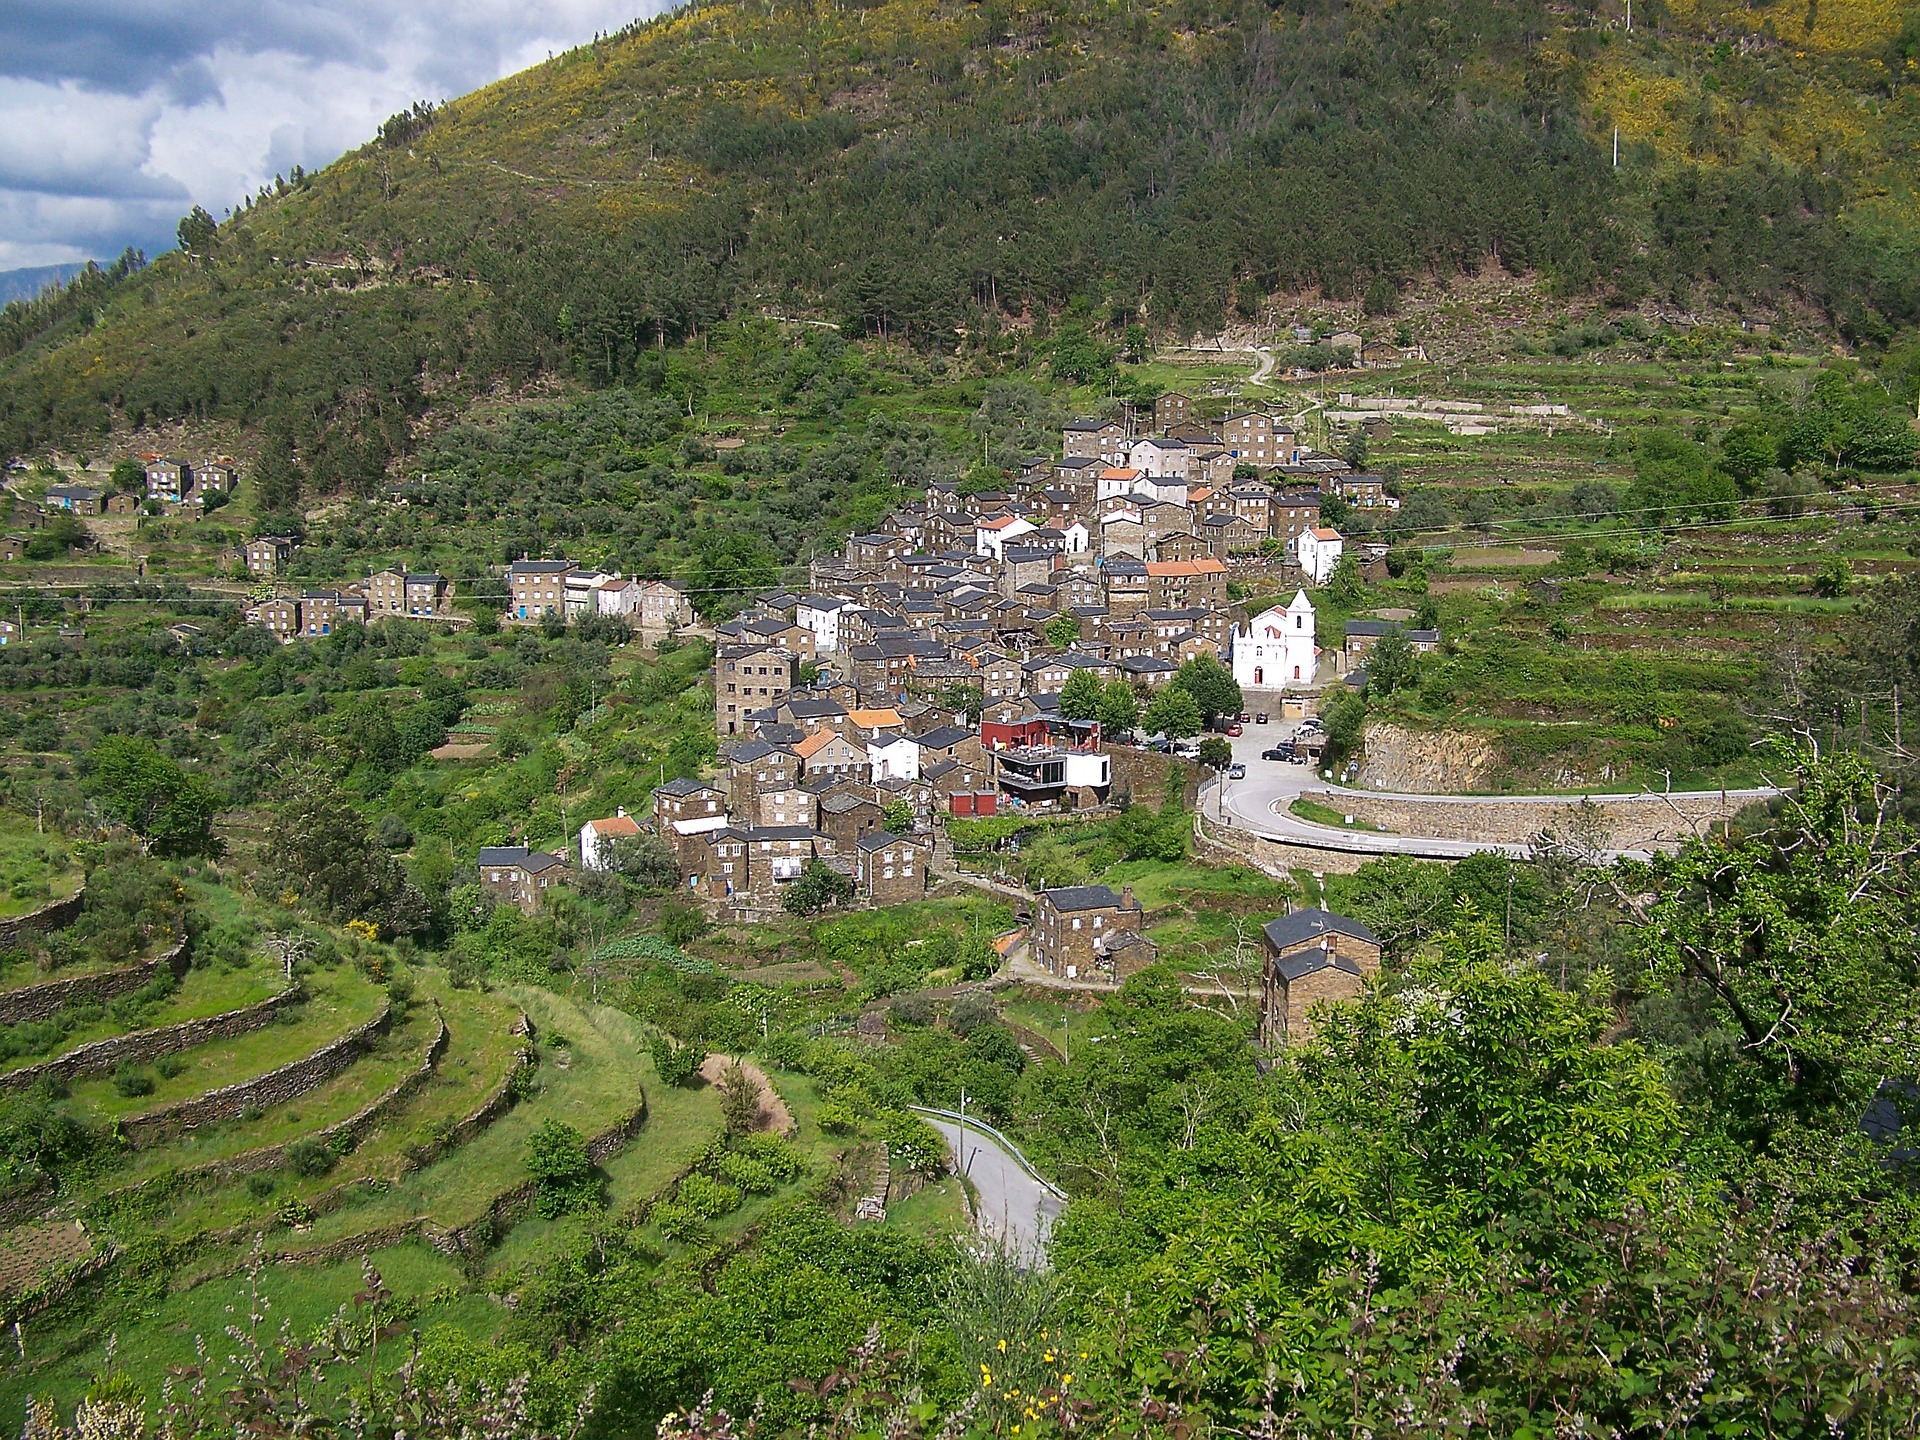 Villages Merveilles du Portugal